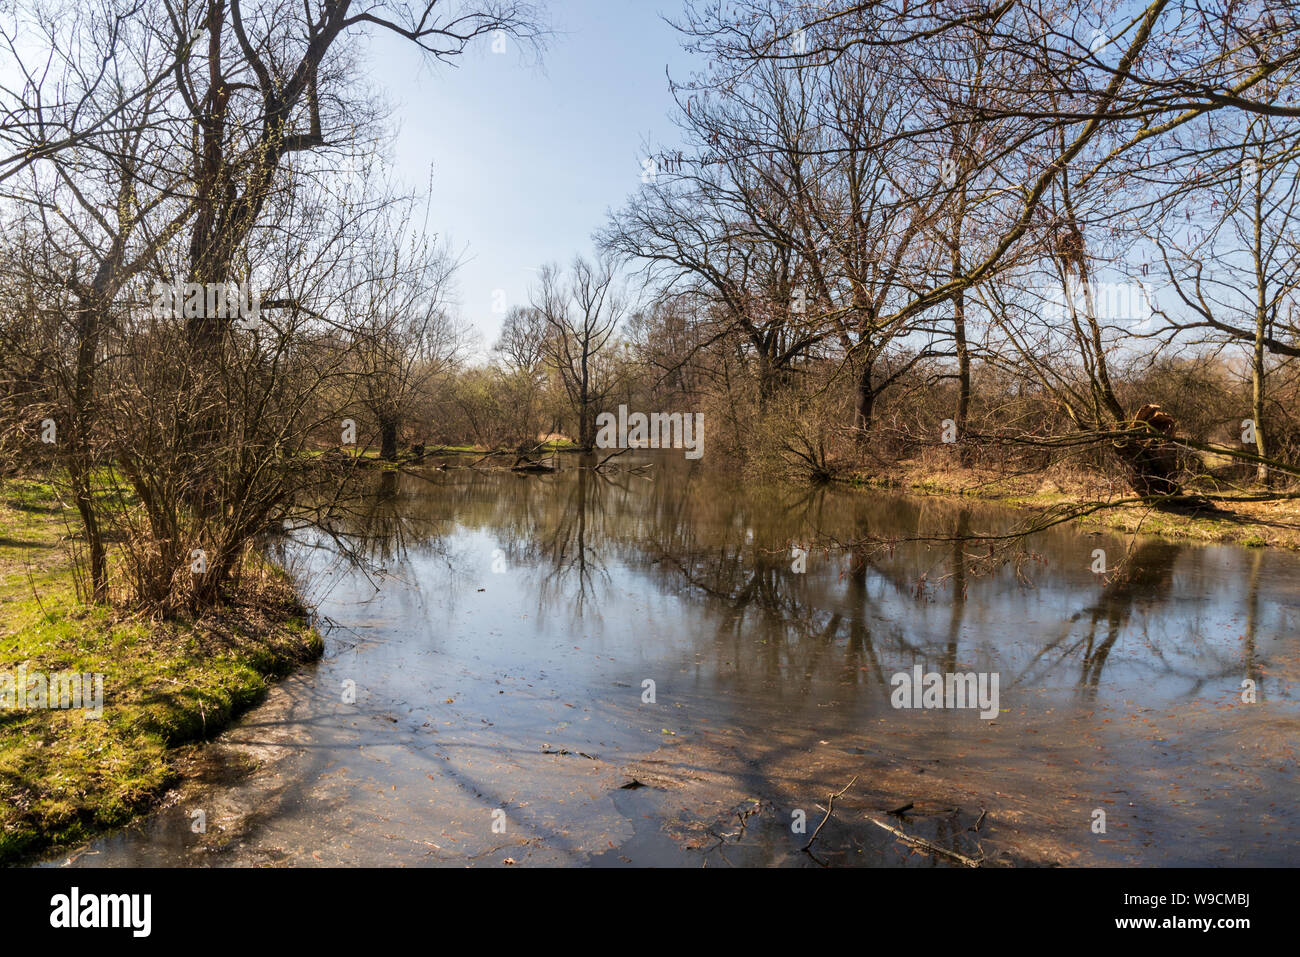 Slanaky River lake avec des arbres autour et ciel clair au début du printemps, près de l'aire protégée CHKO Poodri ville Studenka en République Tchèque Banque D'Images